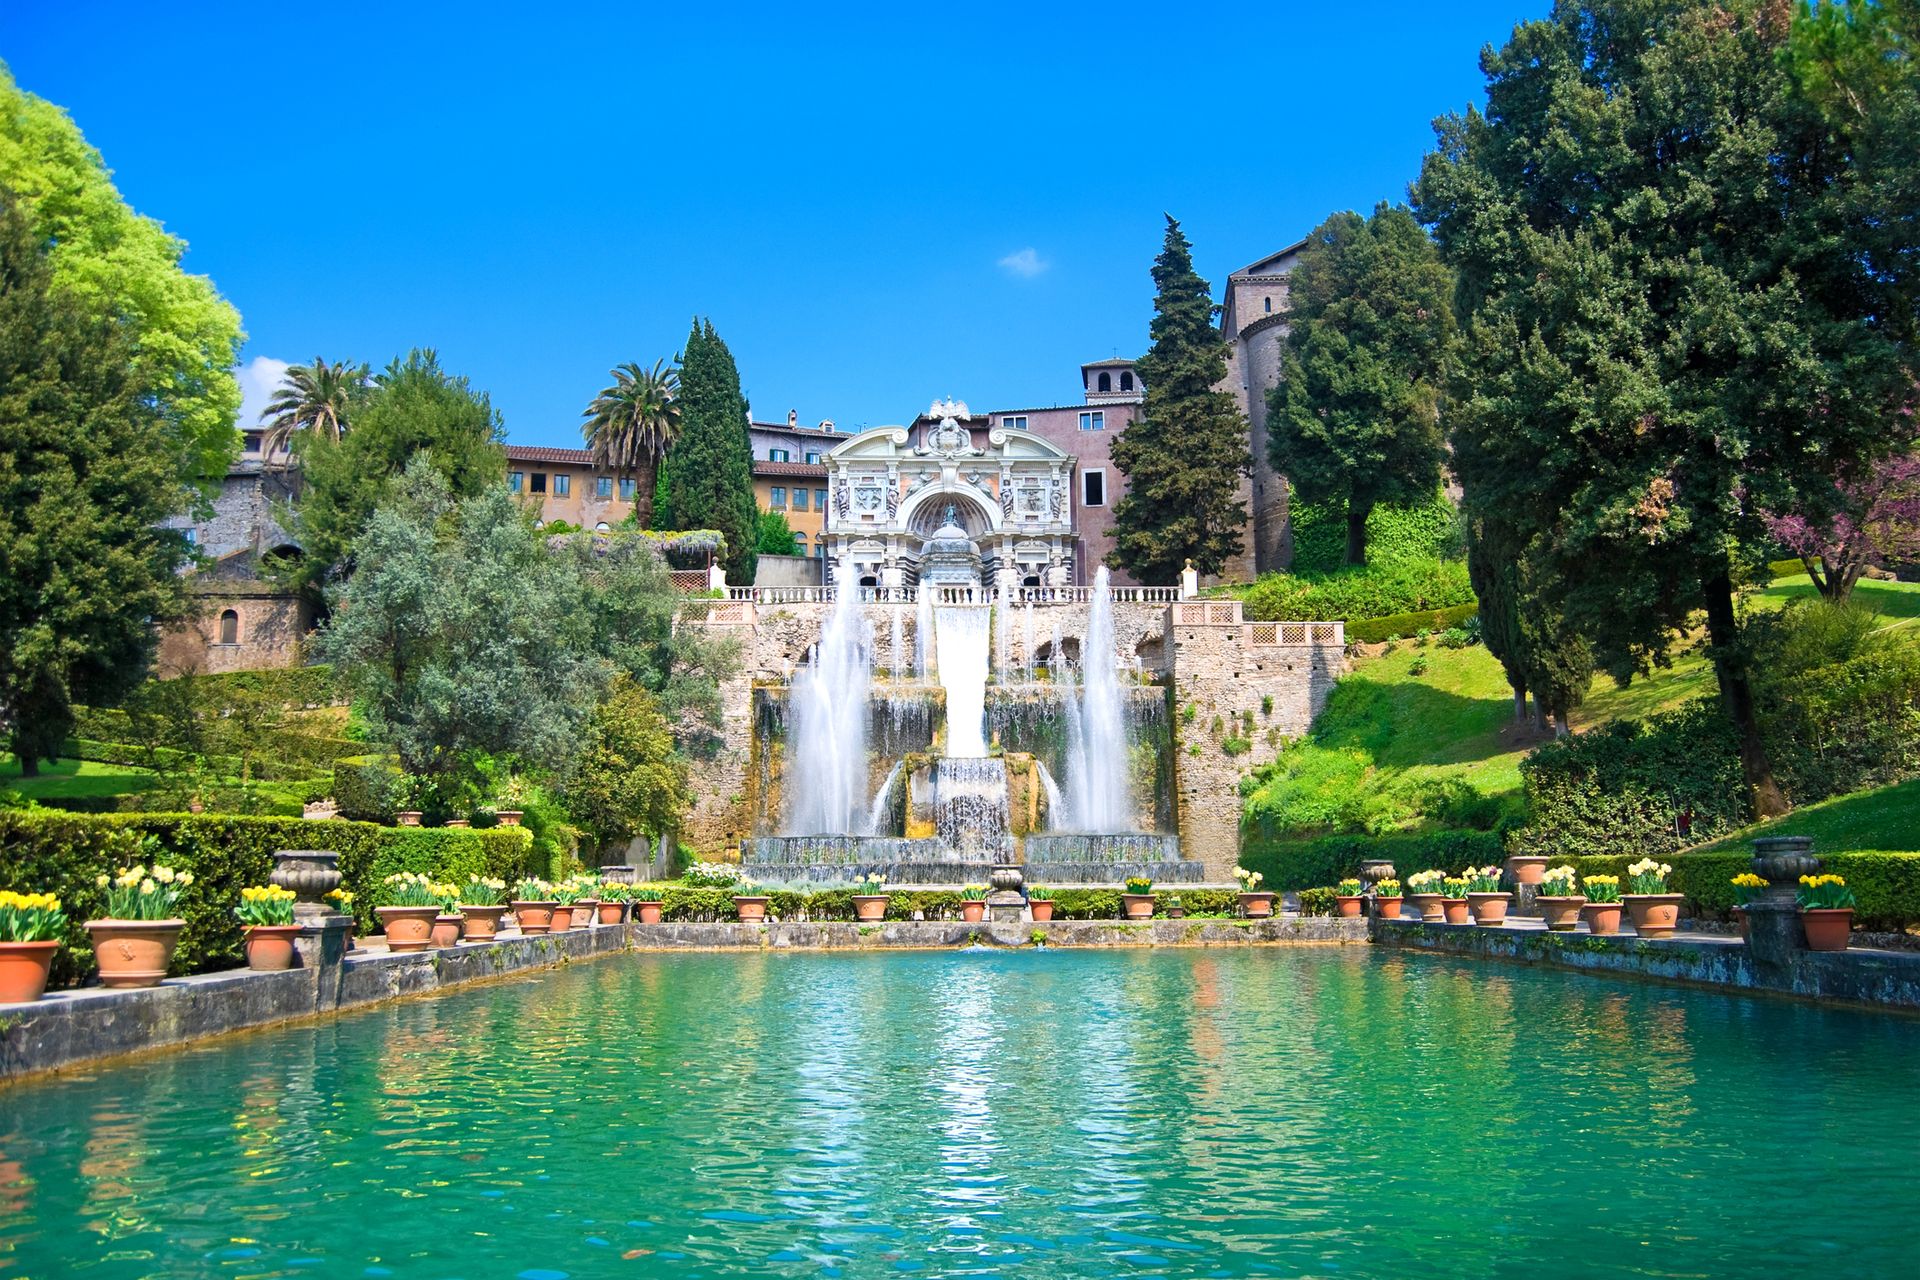 La villa d'Este, Tivoli - Italie ©iStock